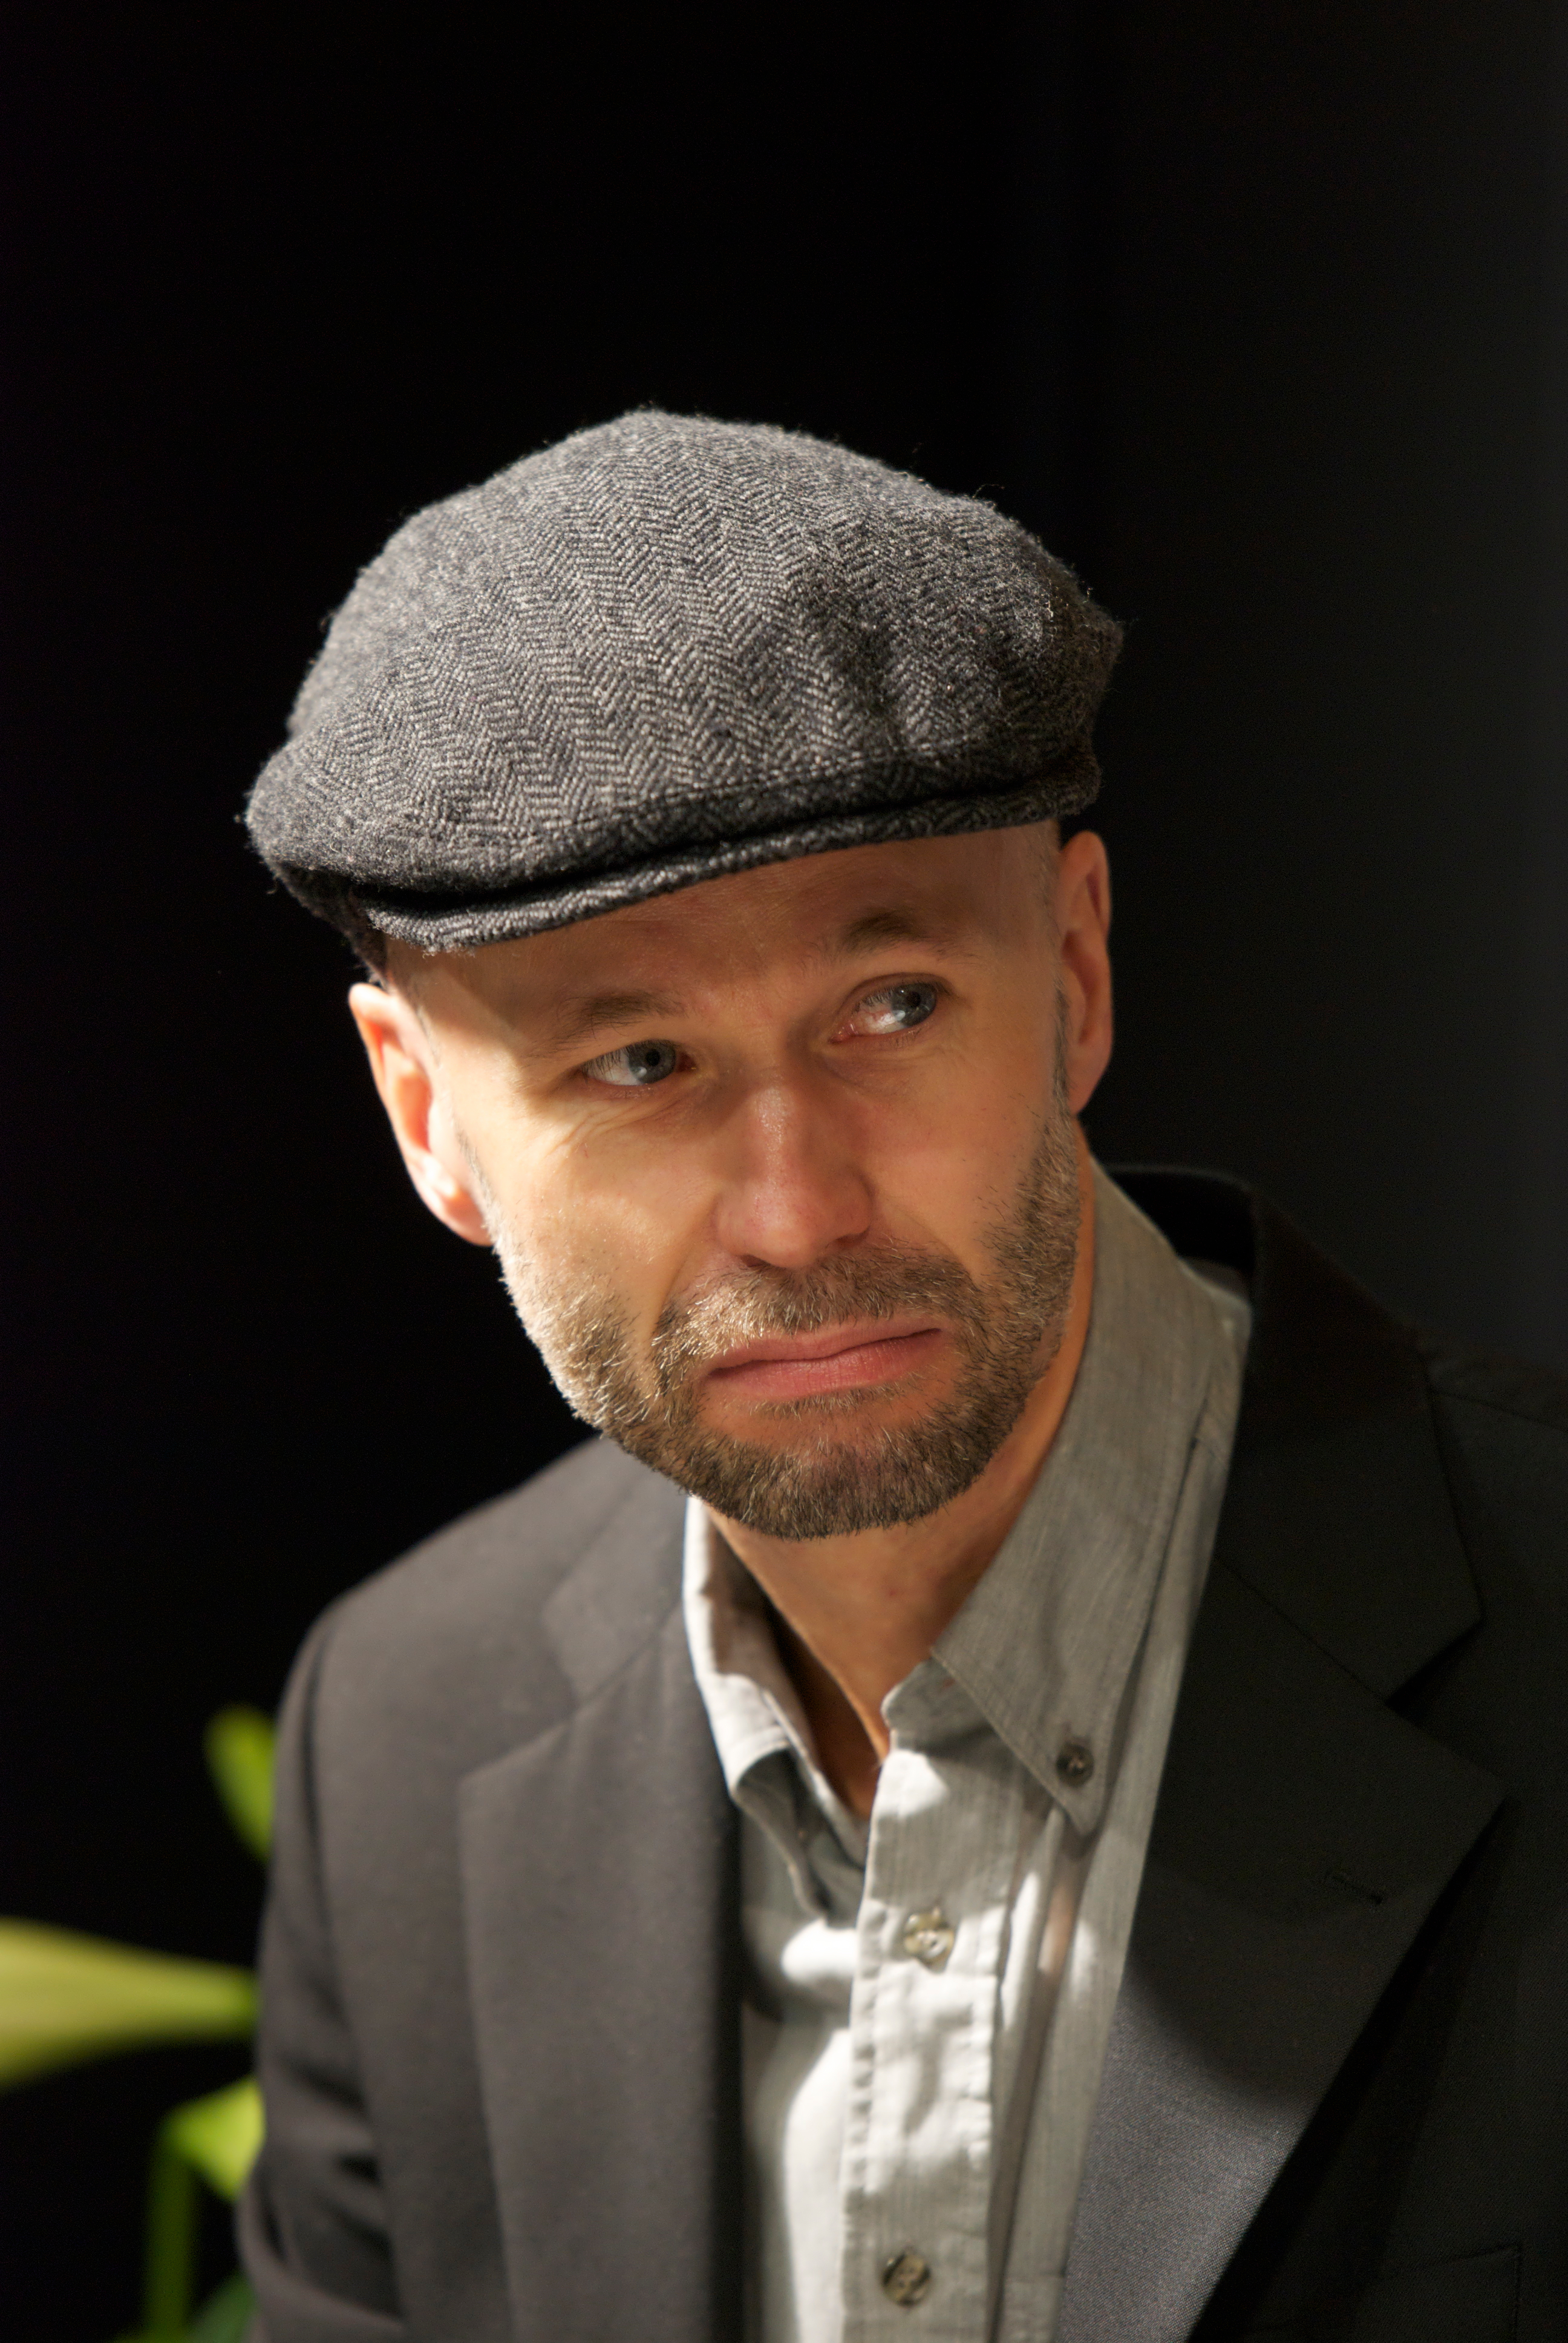 Johan Theorin at Göteborg Book Fair 2011